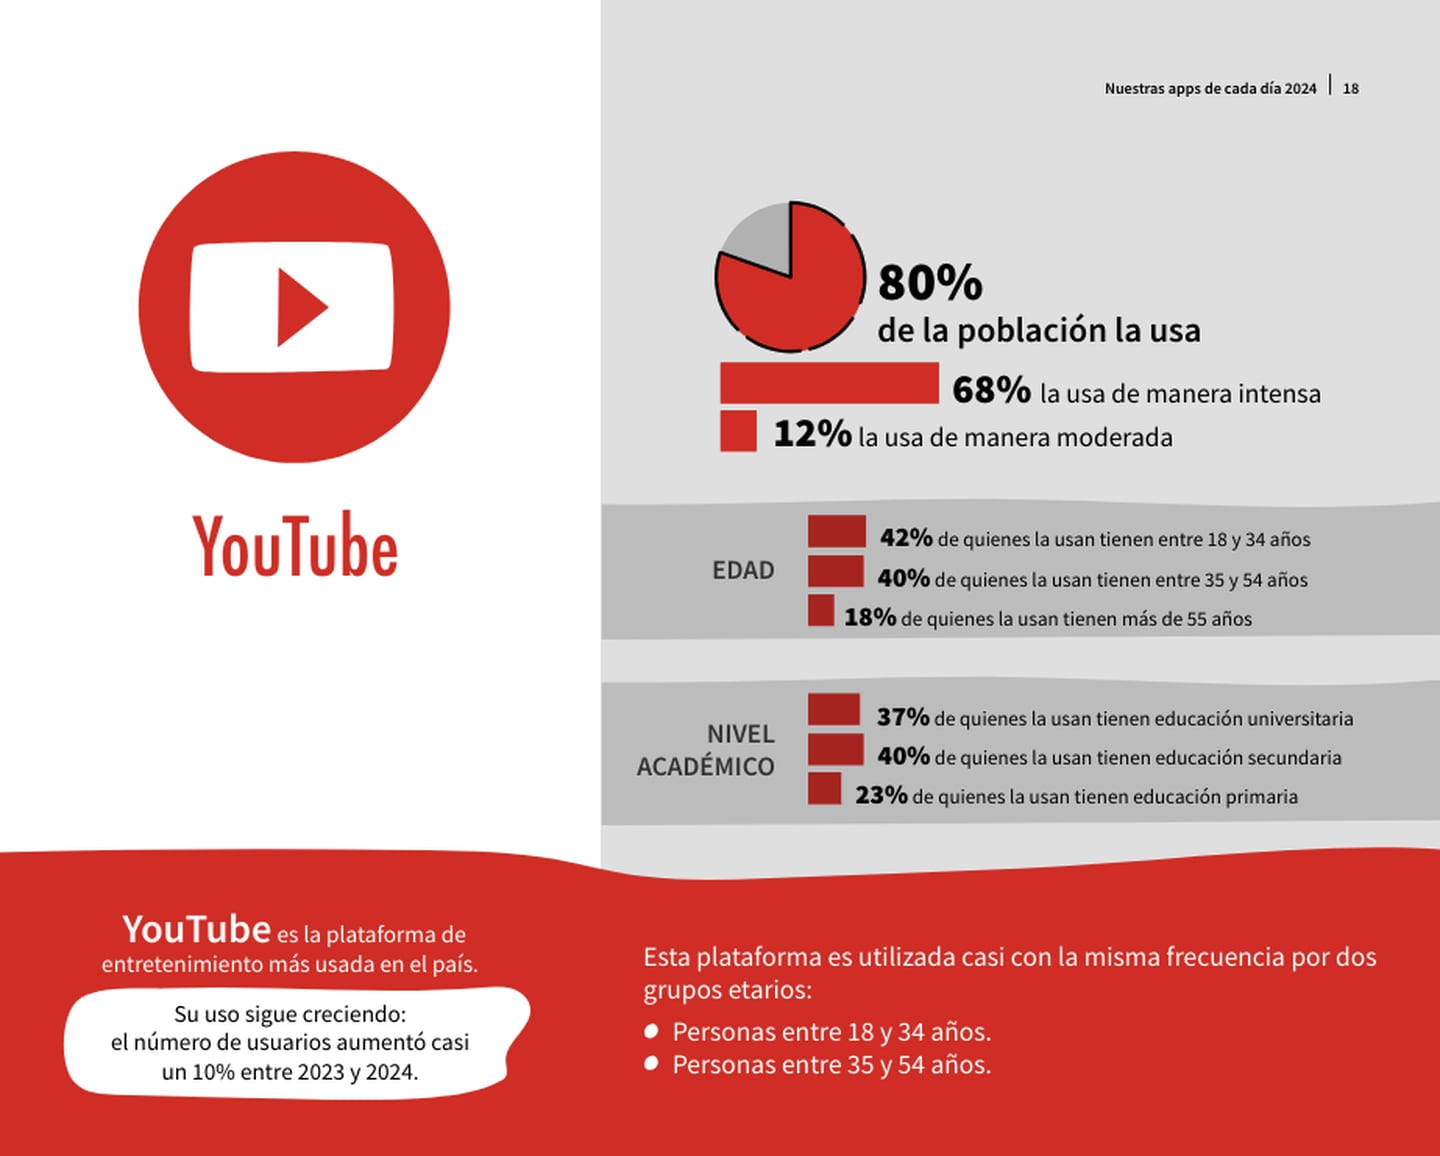 Dentro de las plataformas de entretenimiento, YouTube se posiciona como la más utilizada en el país, con un 80% de uso. (Foto: tomada del estudio del Cicom)